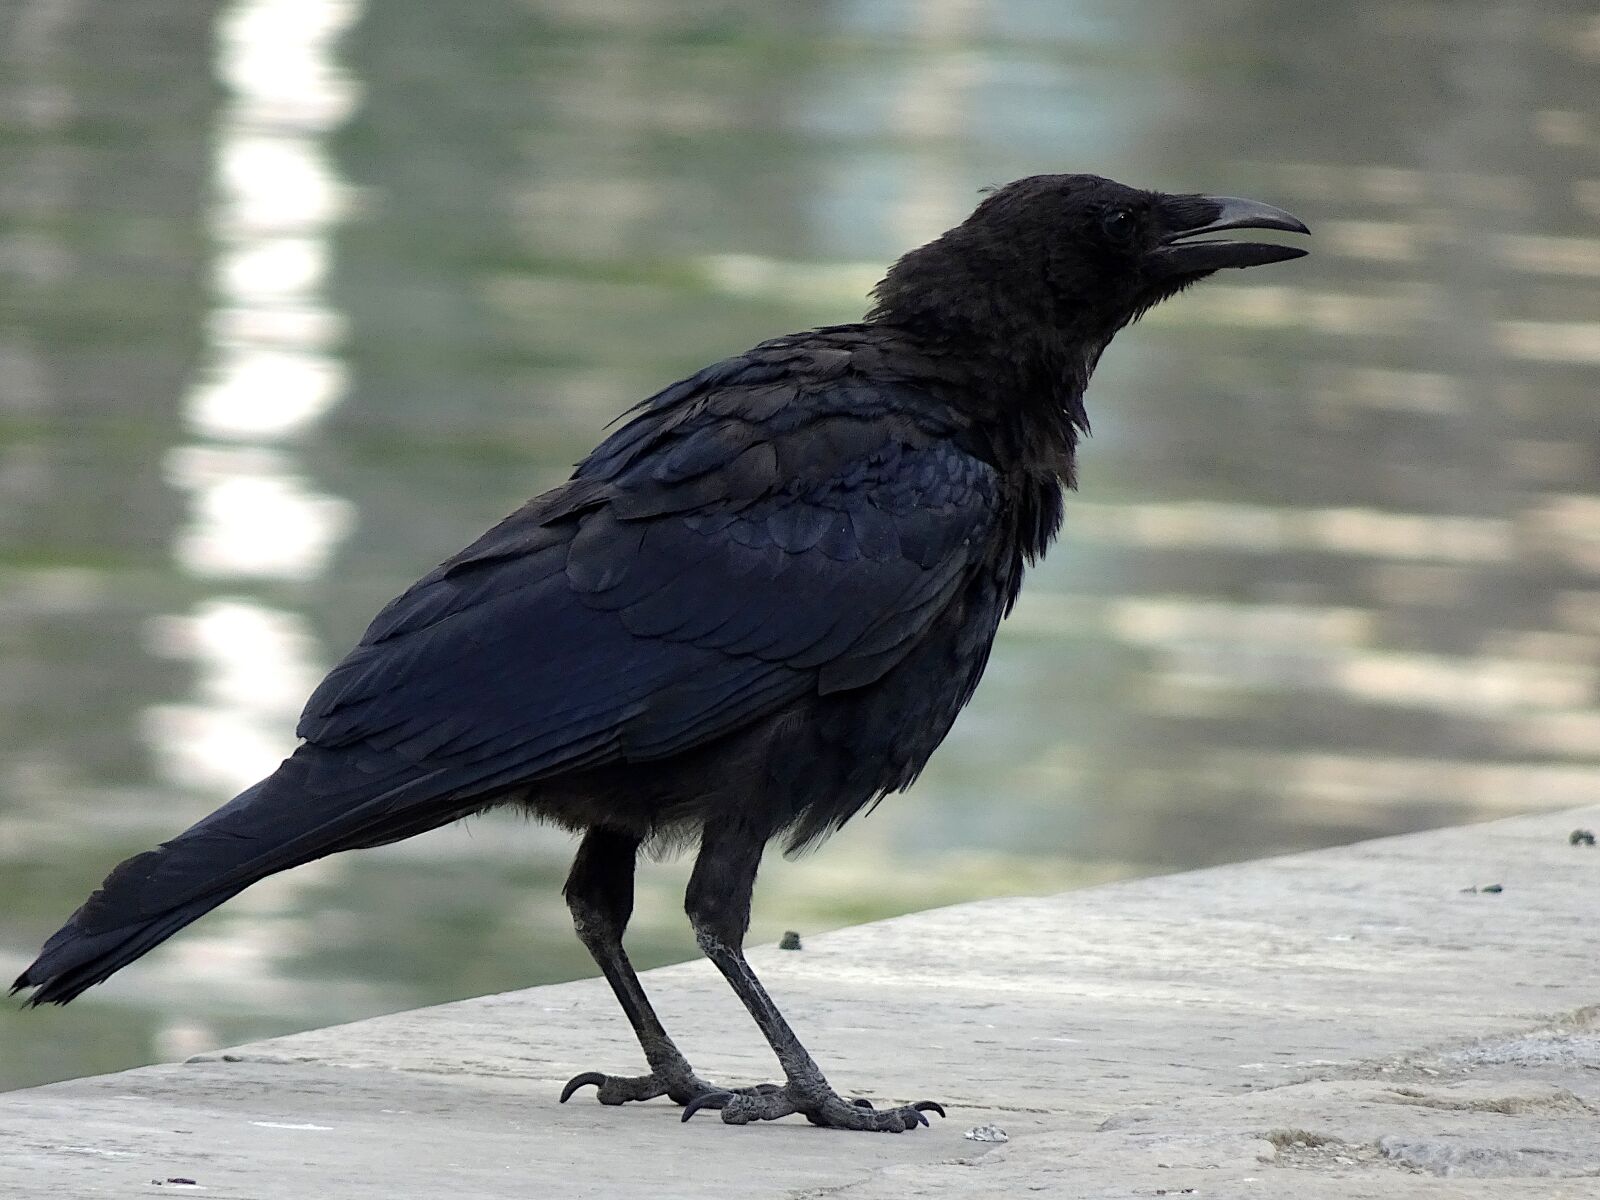 Sony Cyber-shot DSC-HX90V sample photo. Raven, bird, black color photography